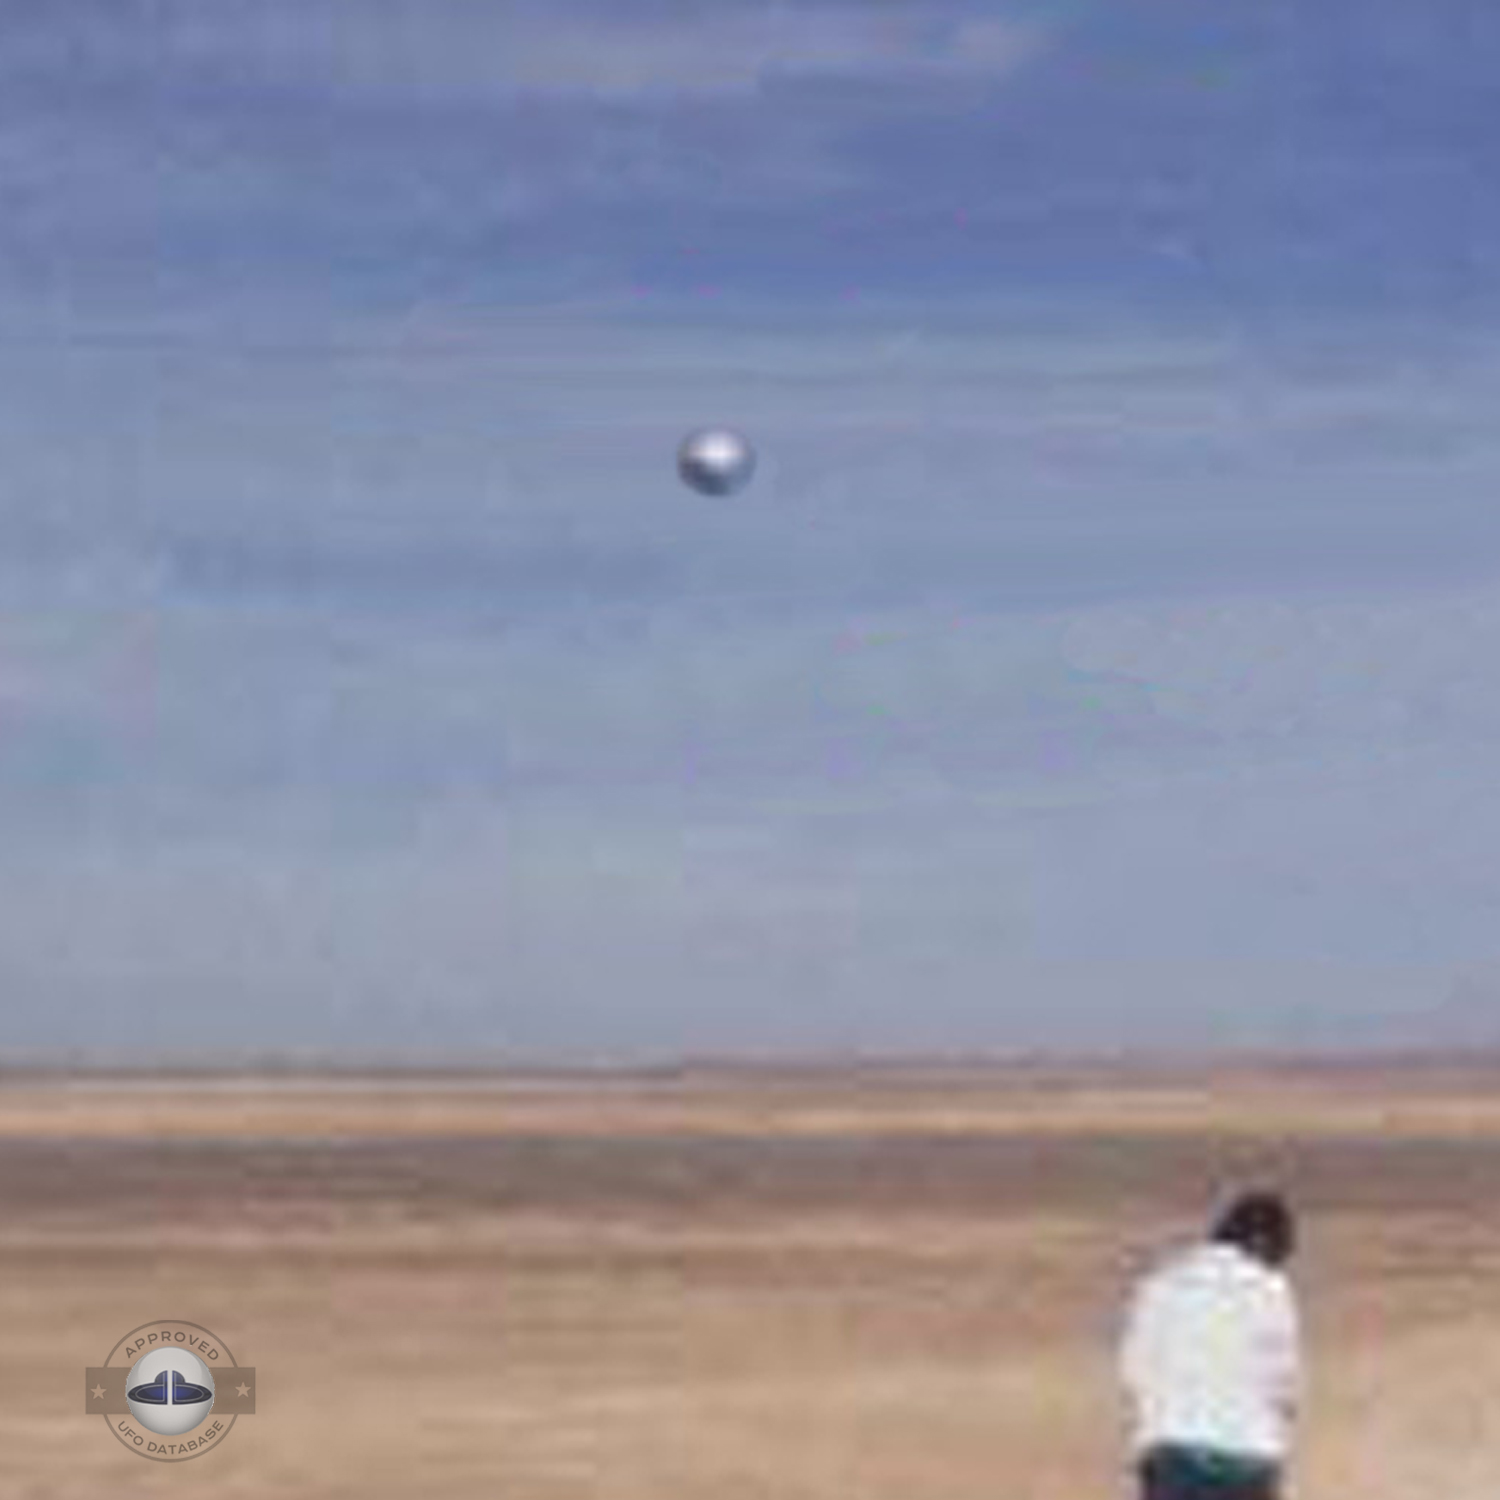 Silver metallic UFO probe in the desert of Chile | Iquique April 2010 UFO Picture #221-3